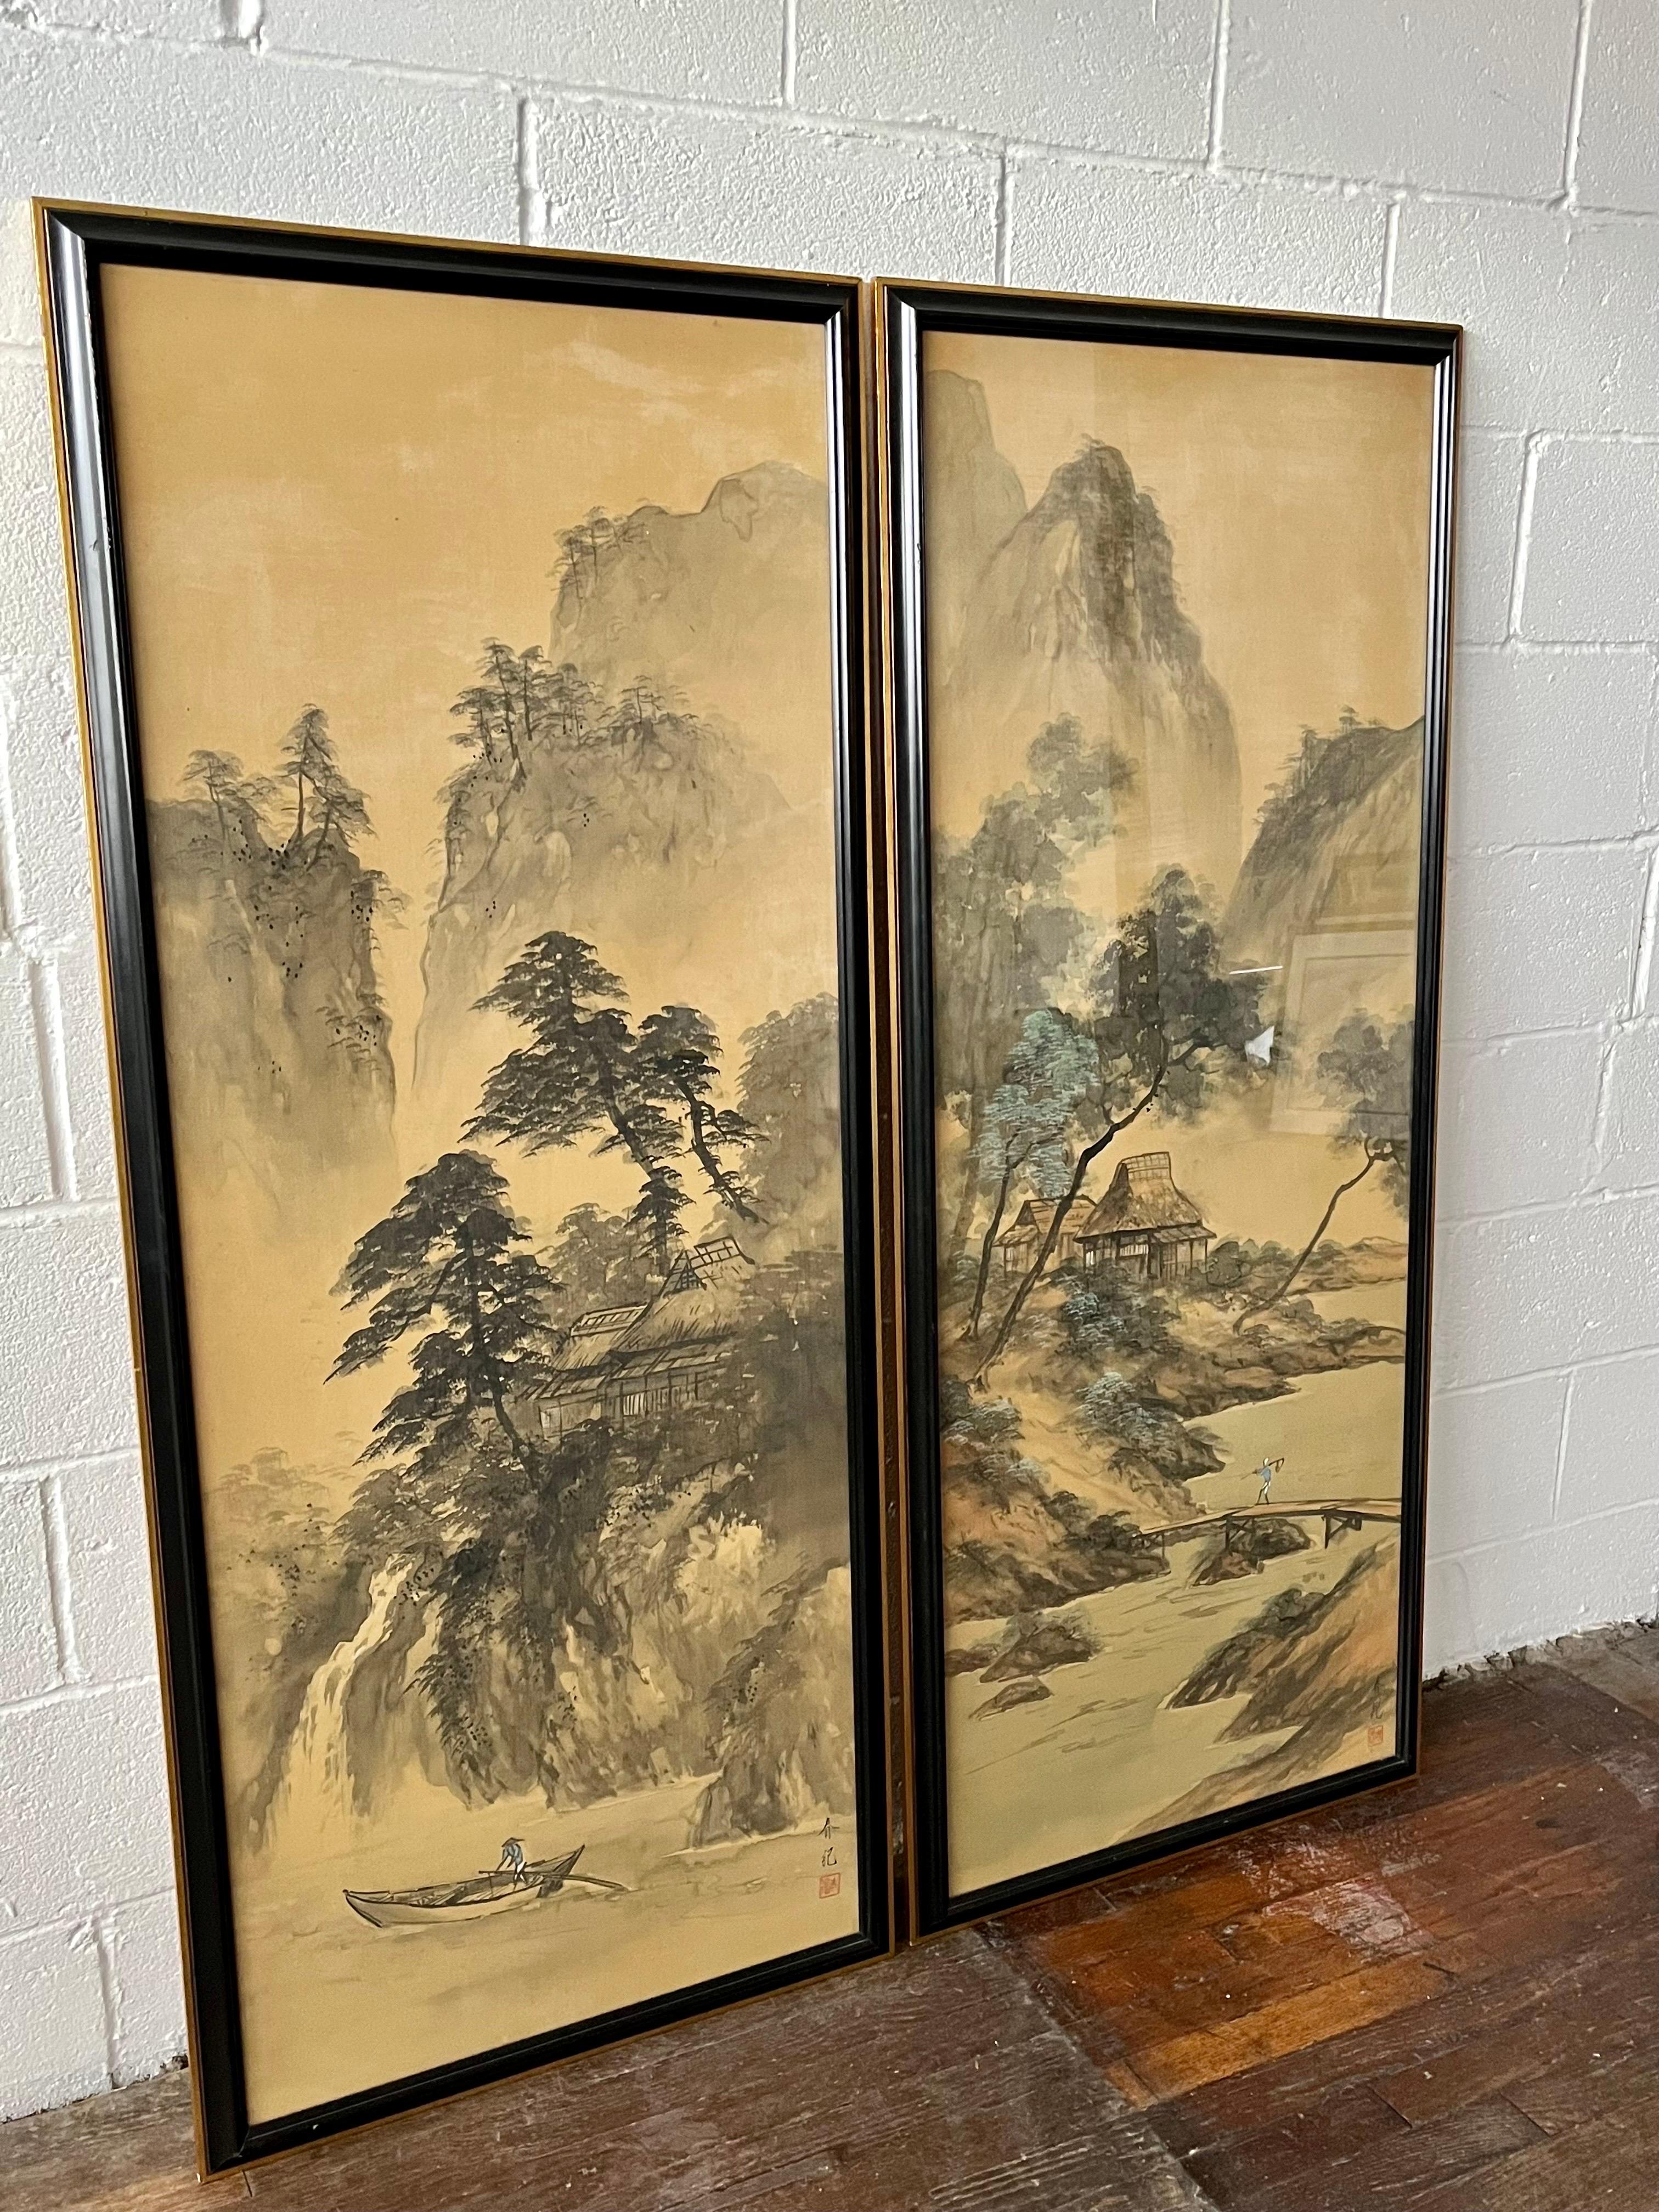 Magnifiques aquarelles asiatiques. Un sujet intéressant et un travail artistique de qualité. Cadre biseauté noir avec bordure dorée.
En bordure de route vers NYC/Philly $350